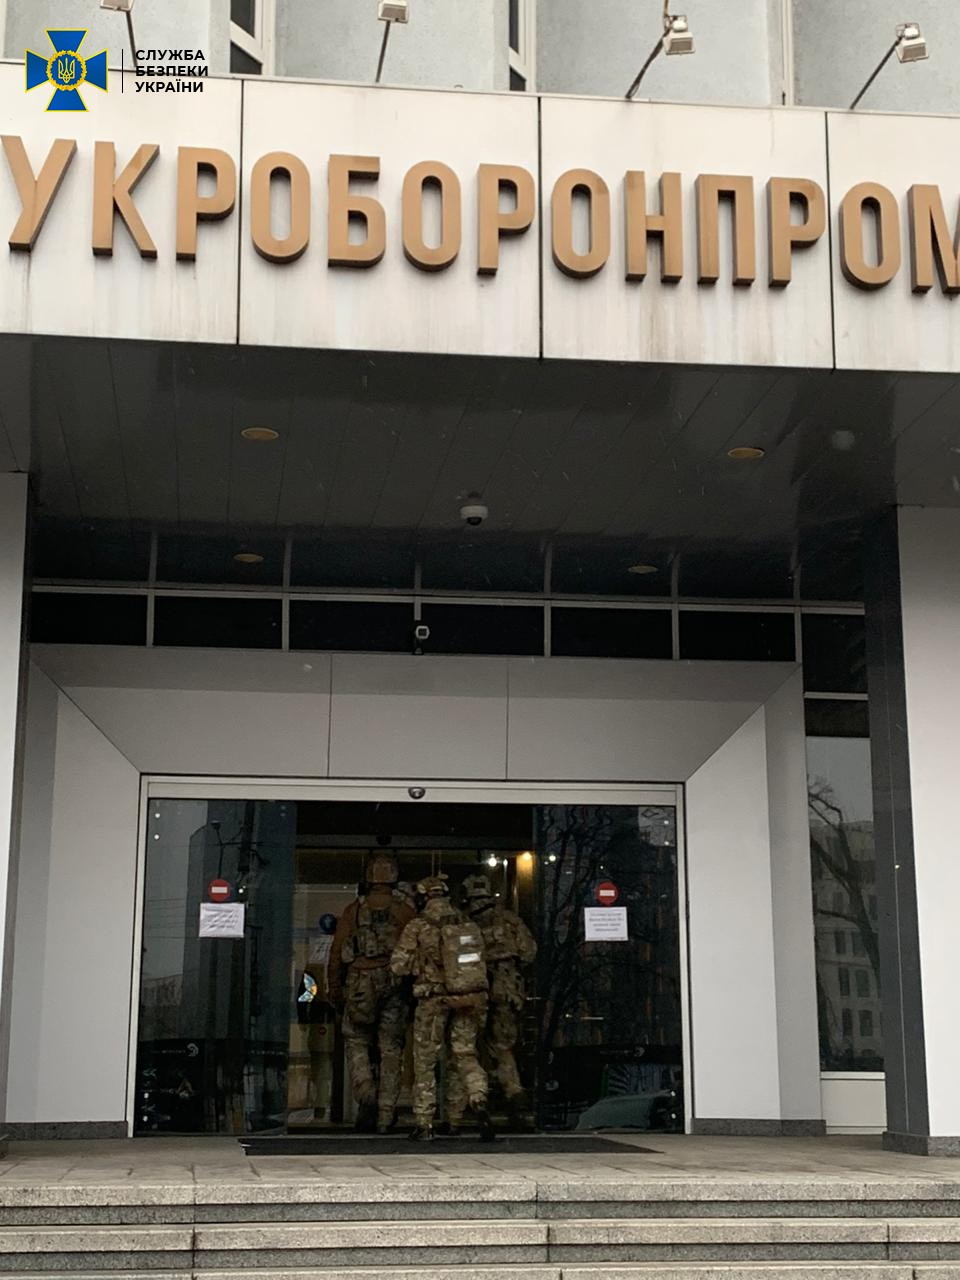 Проводятся следственные действия в служебных помещениях ГК "Укроборонпром" и в ГК "Укрспецэкспорт"